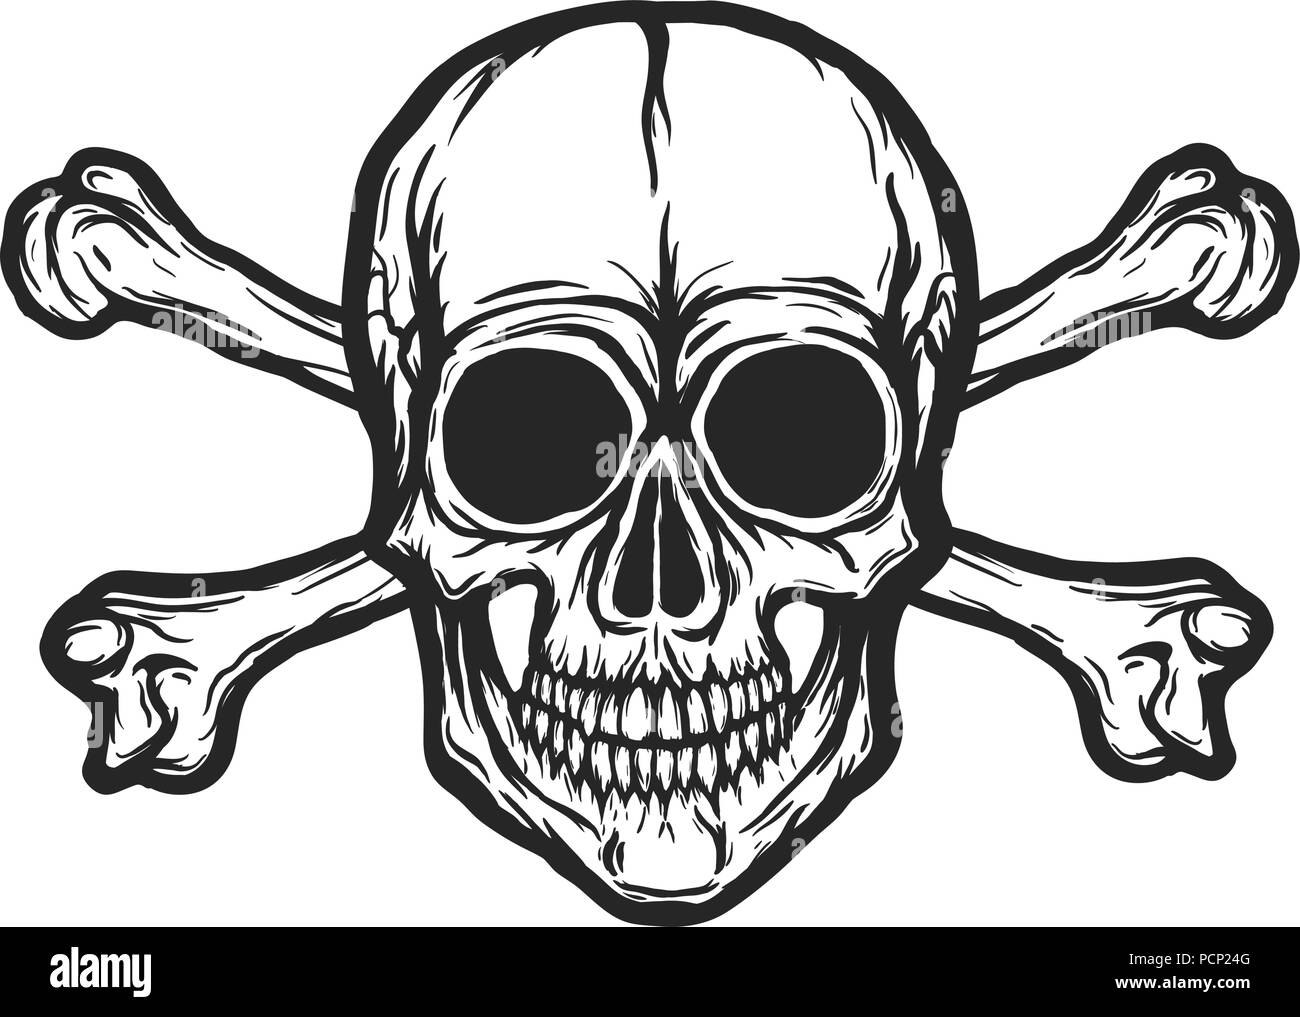 Human Skull mit Knochen Vektor silhouette isoliert auf Weiss. Hand schwarz und weiß Schädel Abbildung gezeichnet. Tätowierung oder Print Design. Transparente backgro Stock Vektor